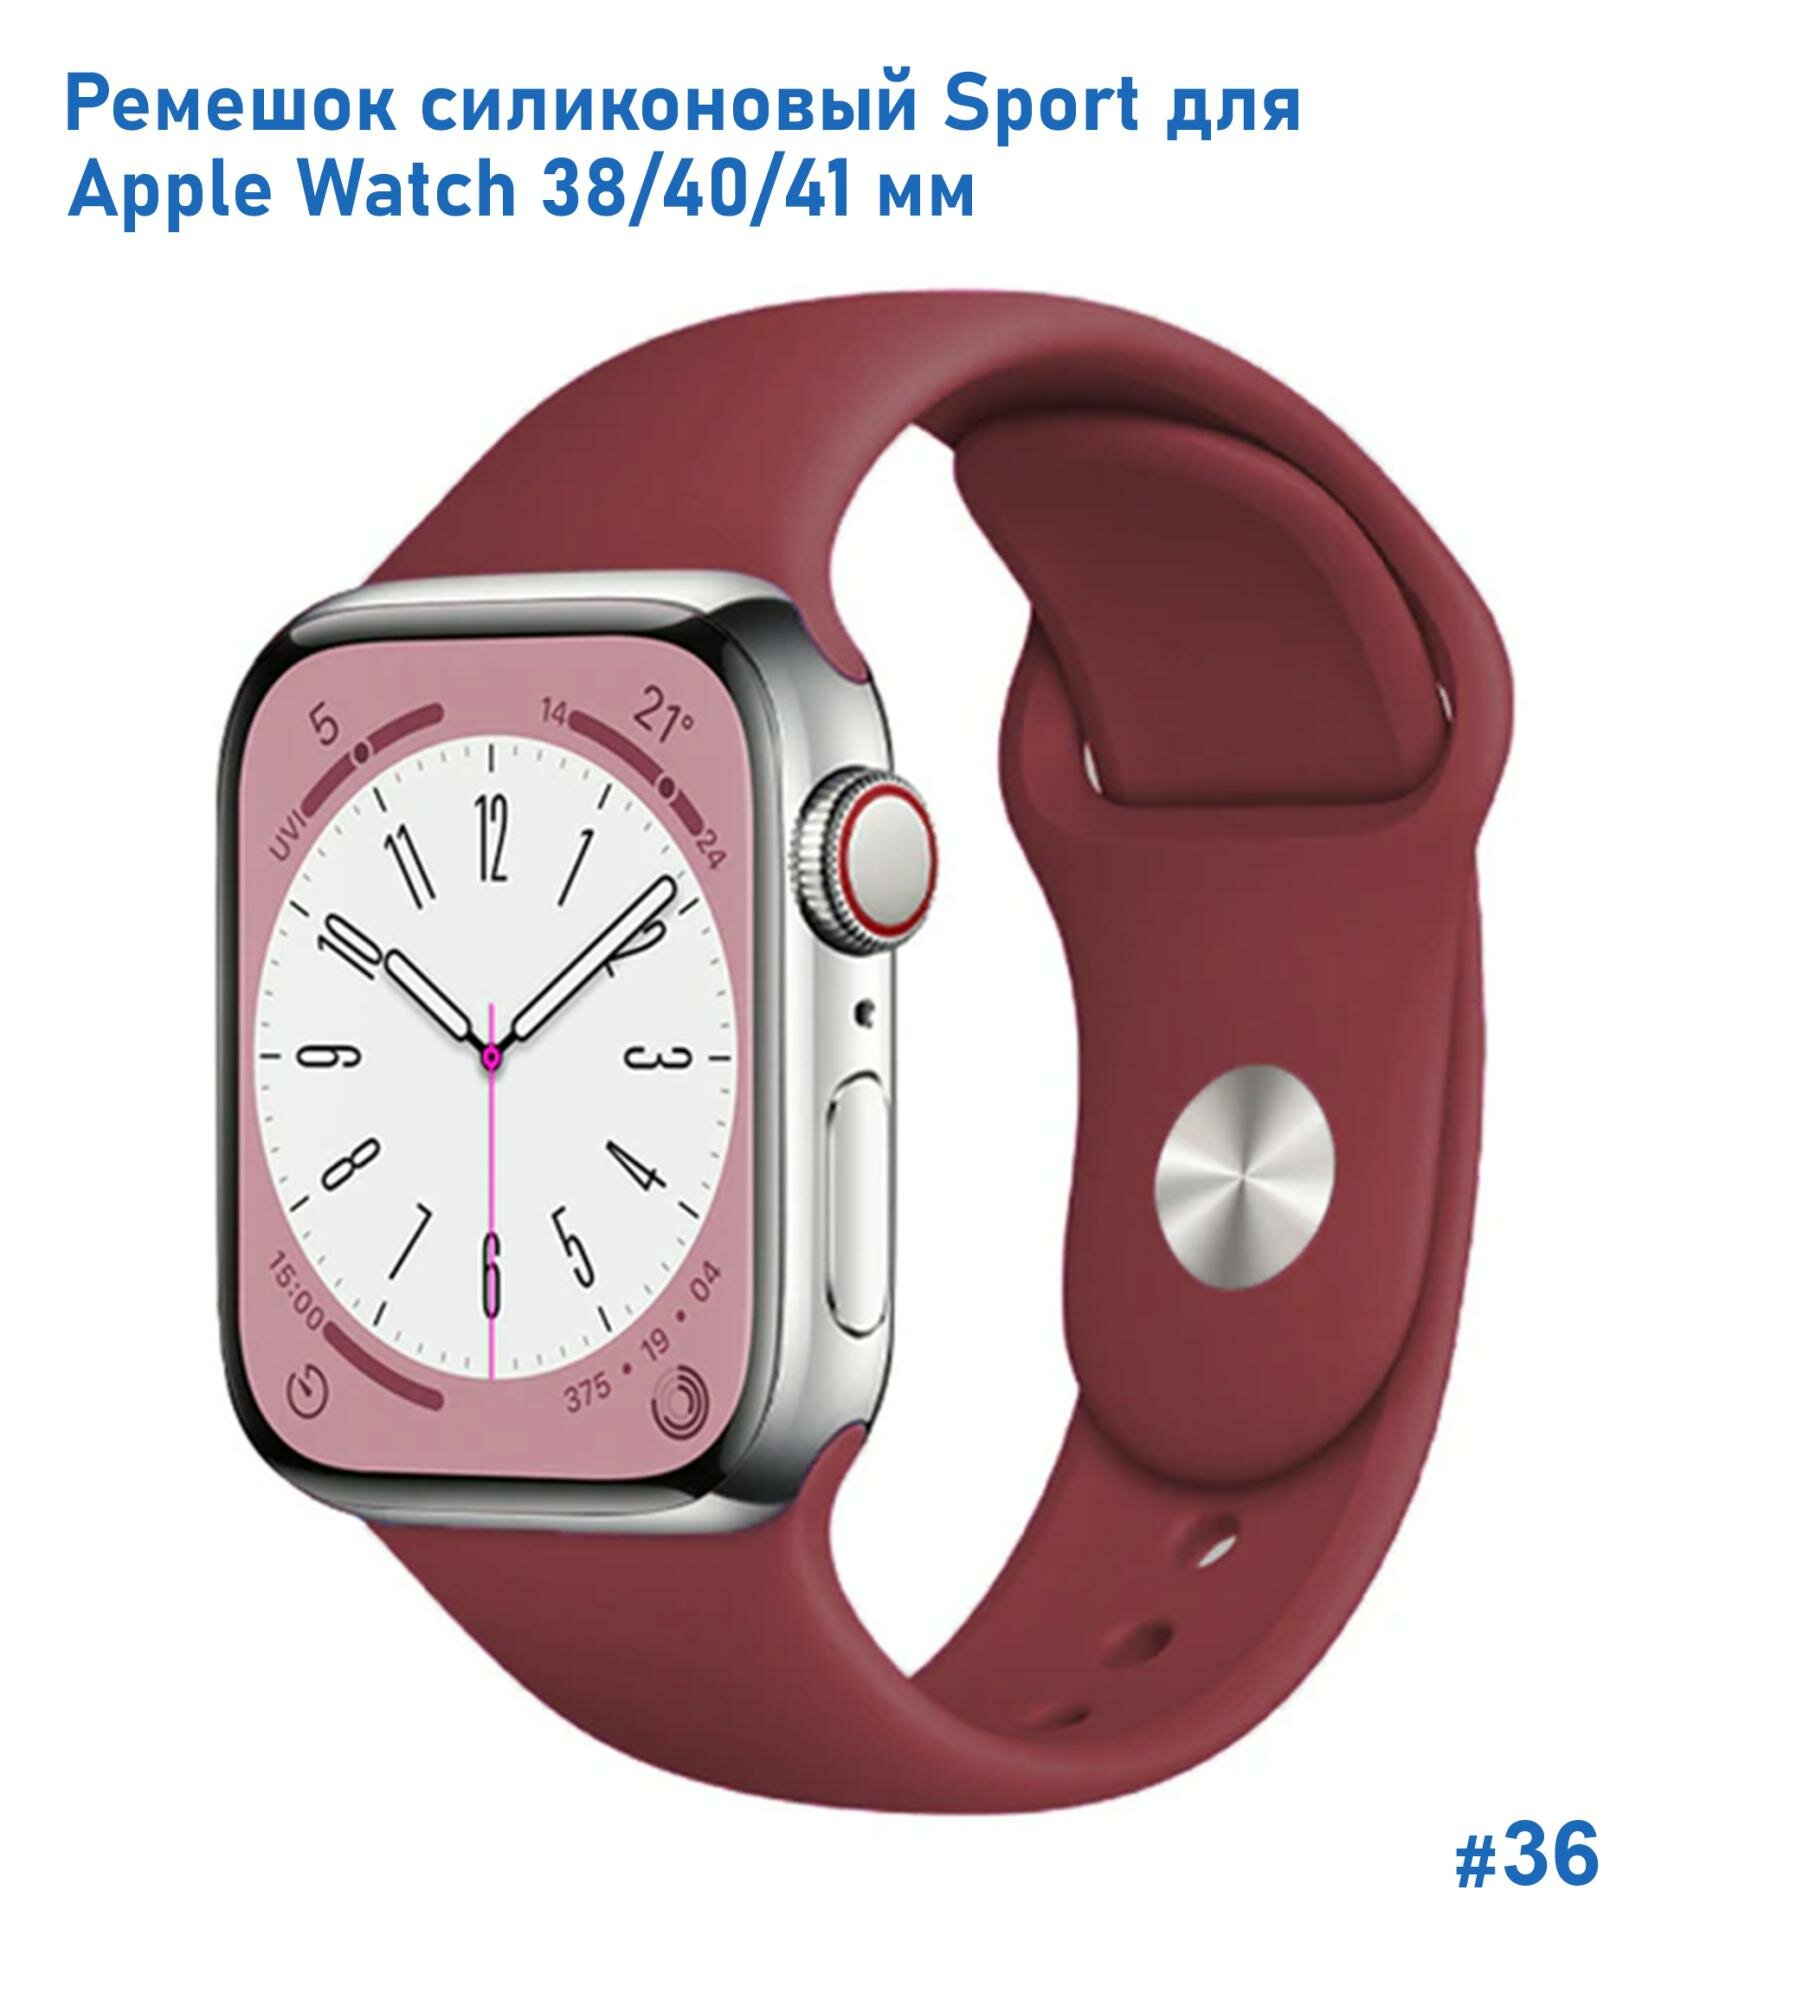 Ремешок силиконовый Sport для Apple Watch 38/40/41 мм, на кнопке, бордовый (36)